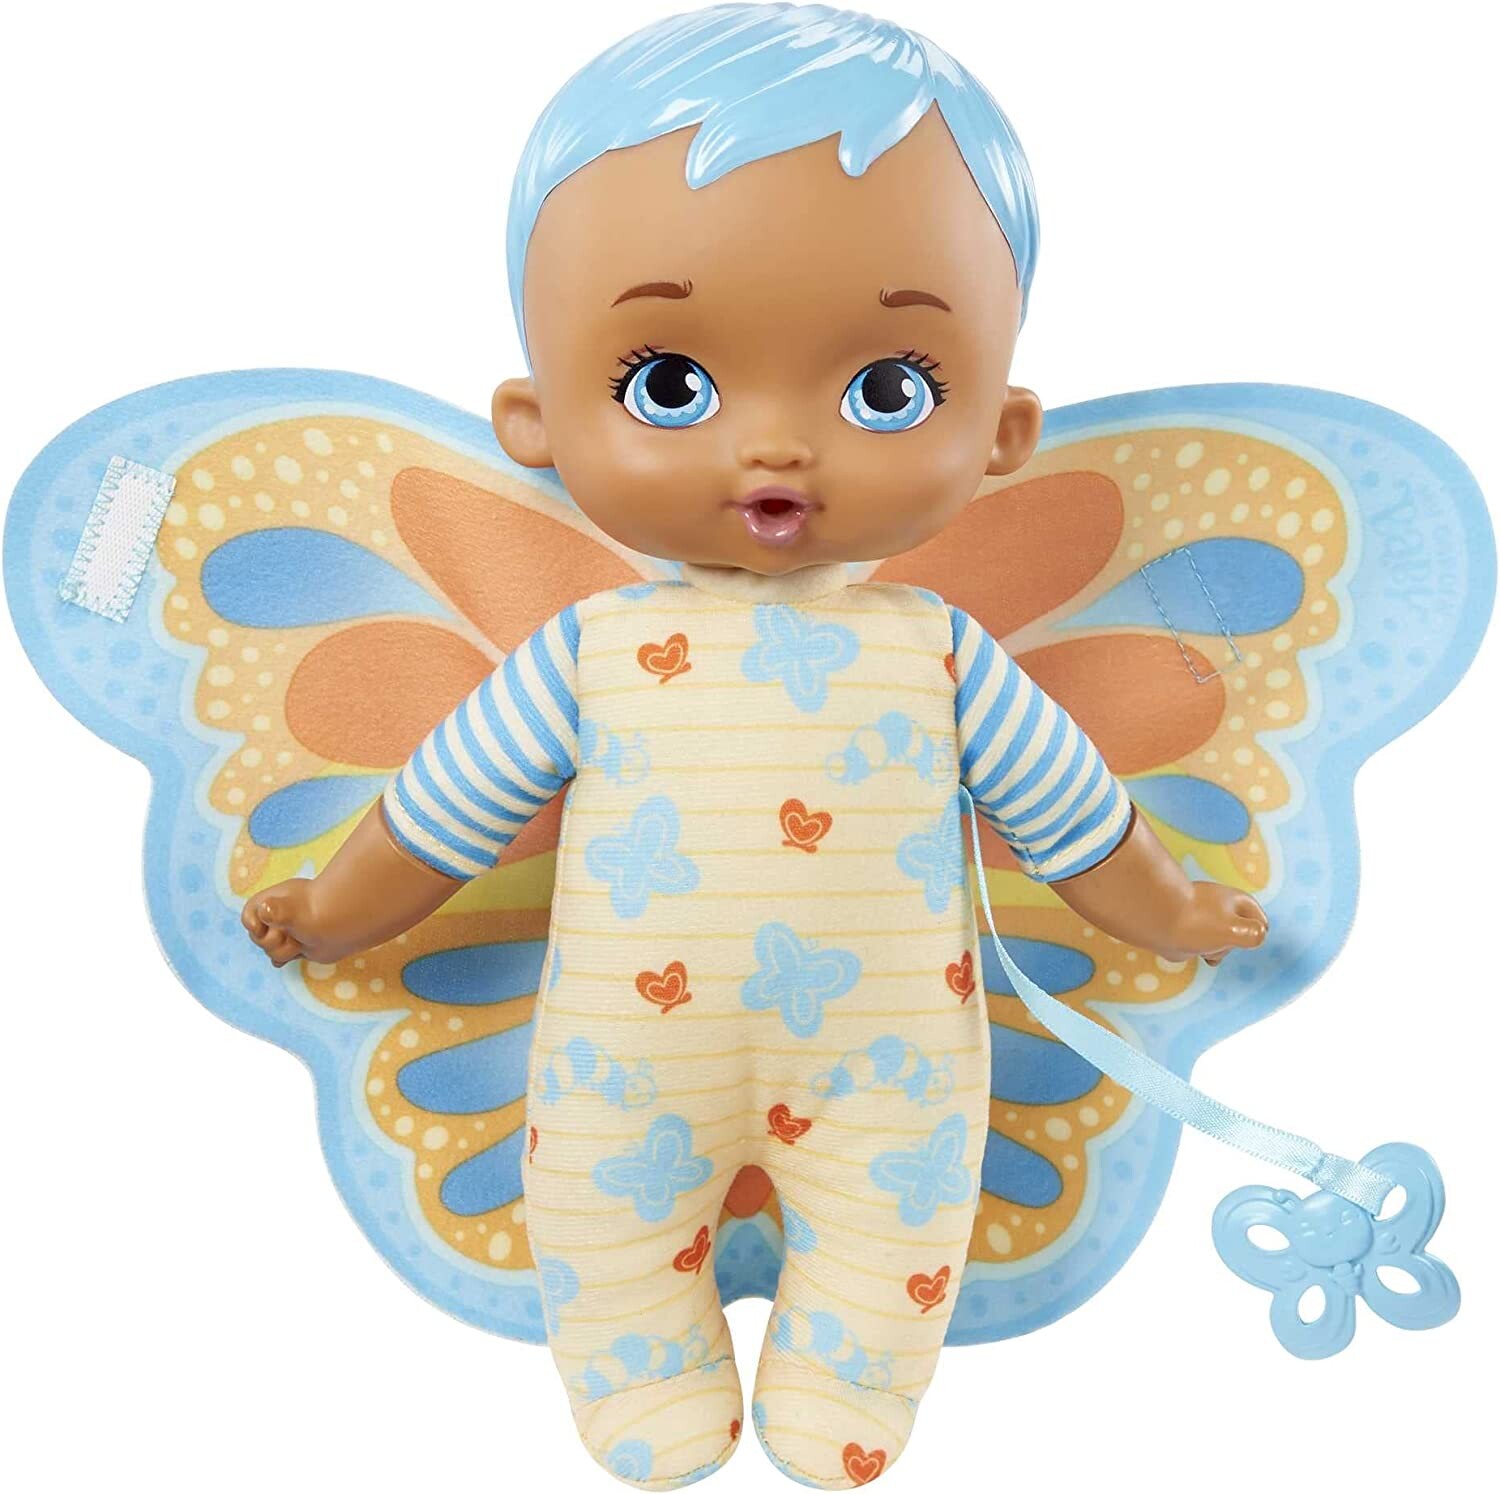 CRY BABIES le porte-bébé  Accessoire pour poupée 30cm et peluche.